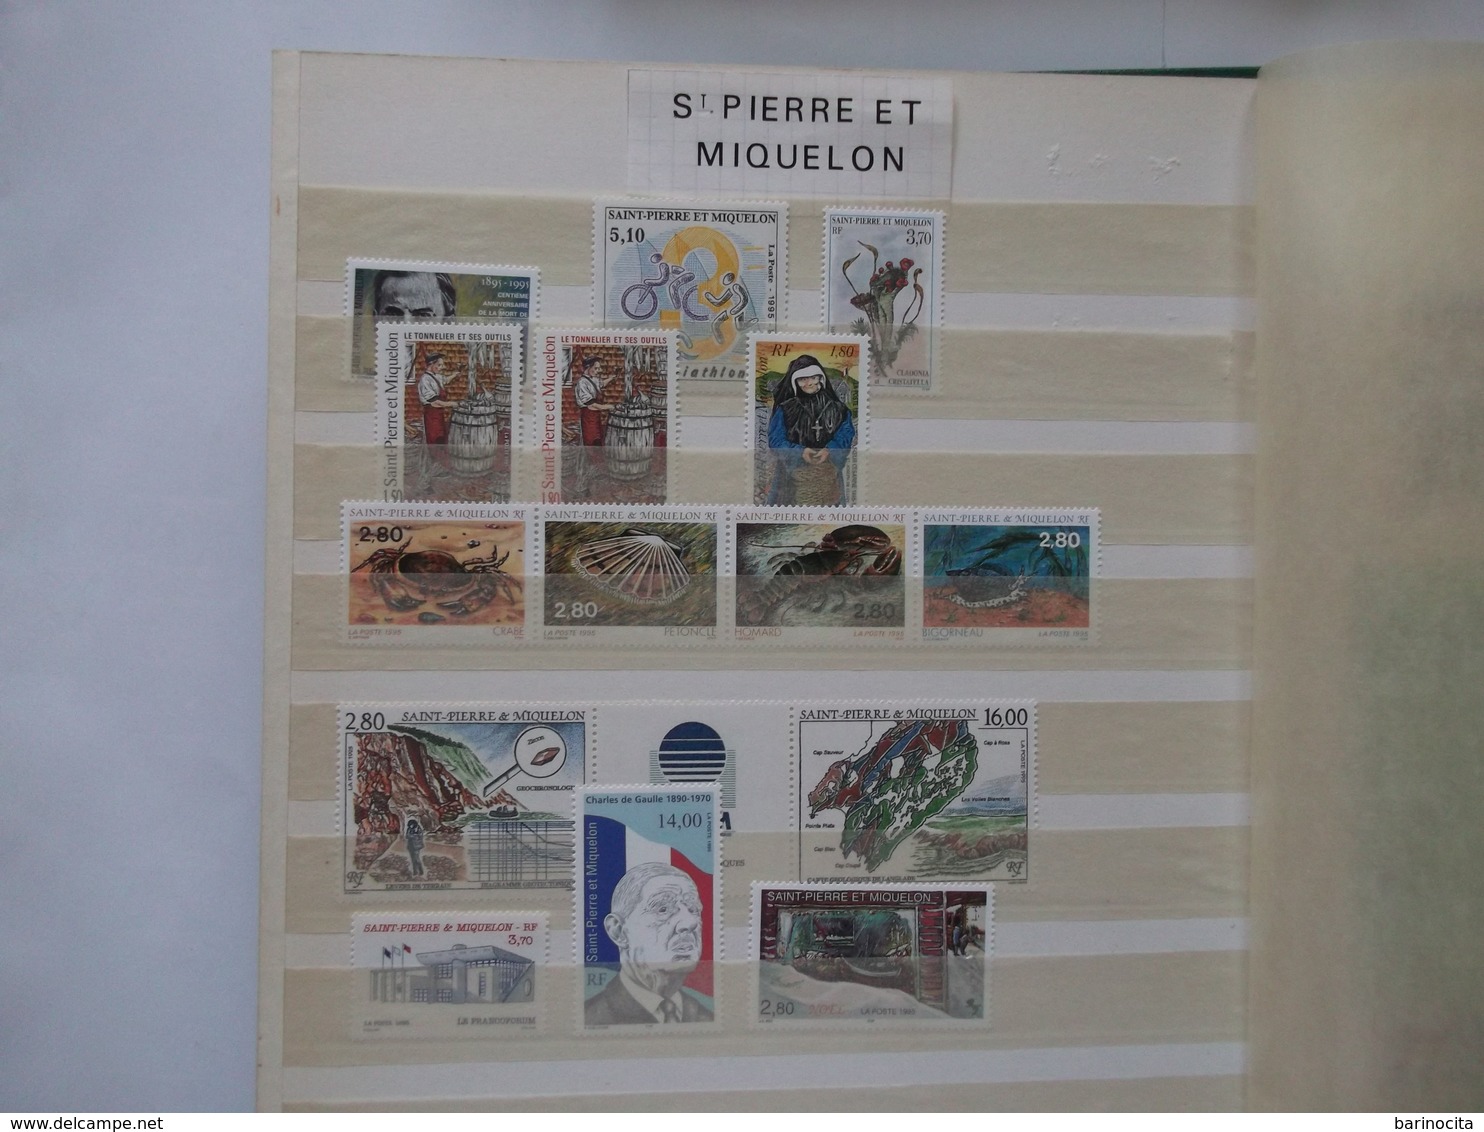 SAINT PIERRE Et MIQUELON    Année 1995  Complete Du N° 609 Au 623  Neuf ( Voir Photo) Cote 34,30  Euros - Full Years